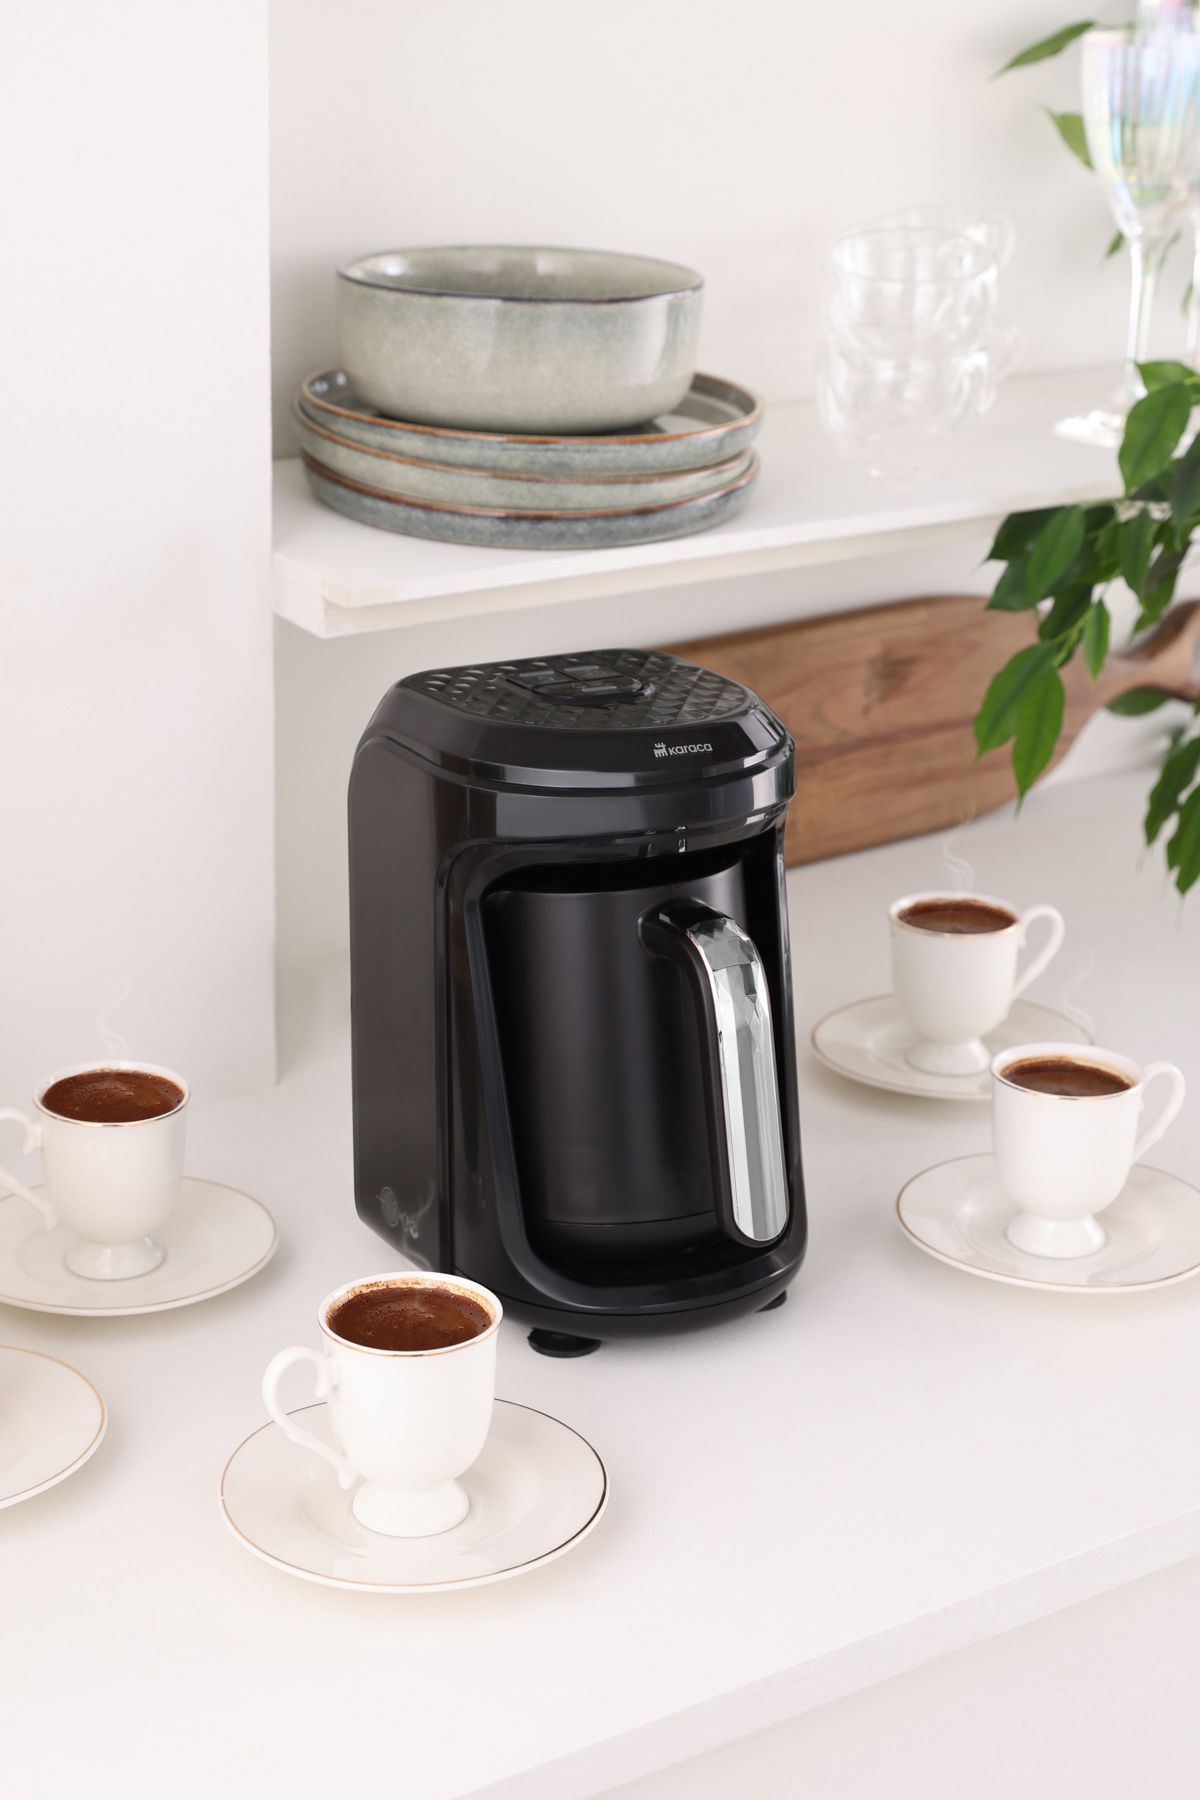 Karaca Hatır Hüps Quartz Közde, Sütlü Içecek Hazırlama Türk Kahve Makinesi 5 Fincan Kapasiteli Black Chrome